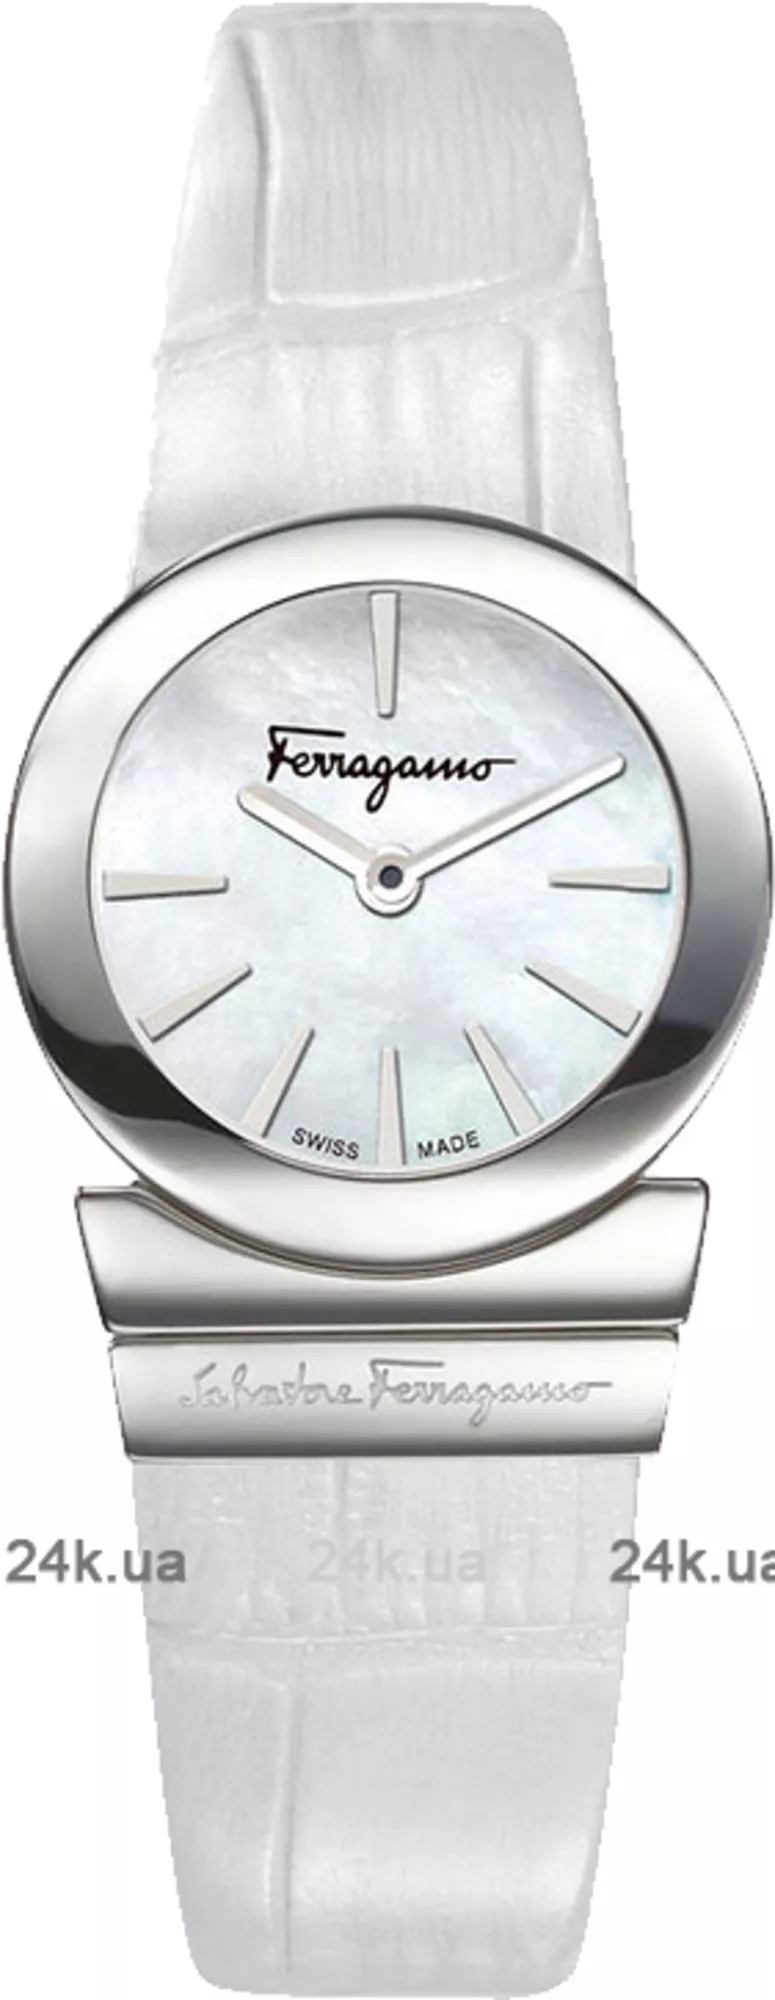 Часы Salvatore Ferragamo Fr70sbq9991 sb01